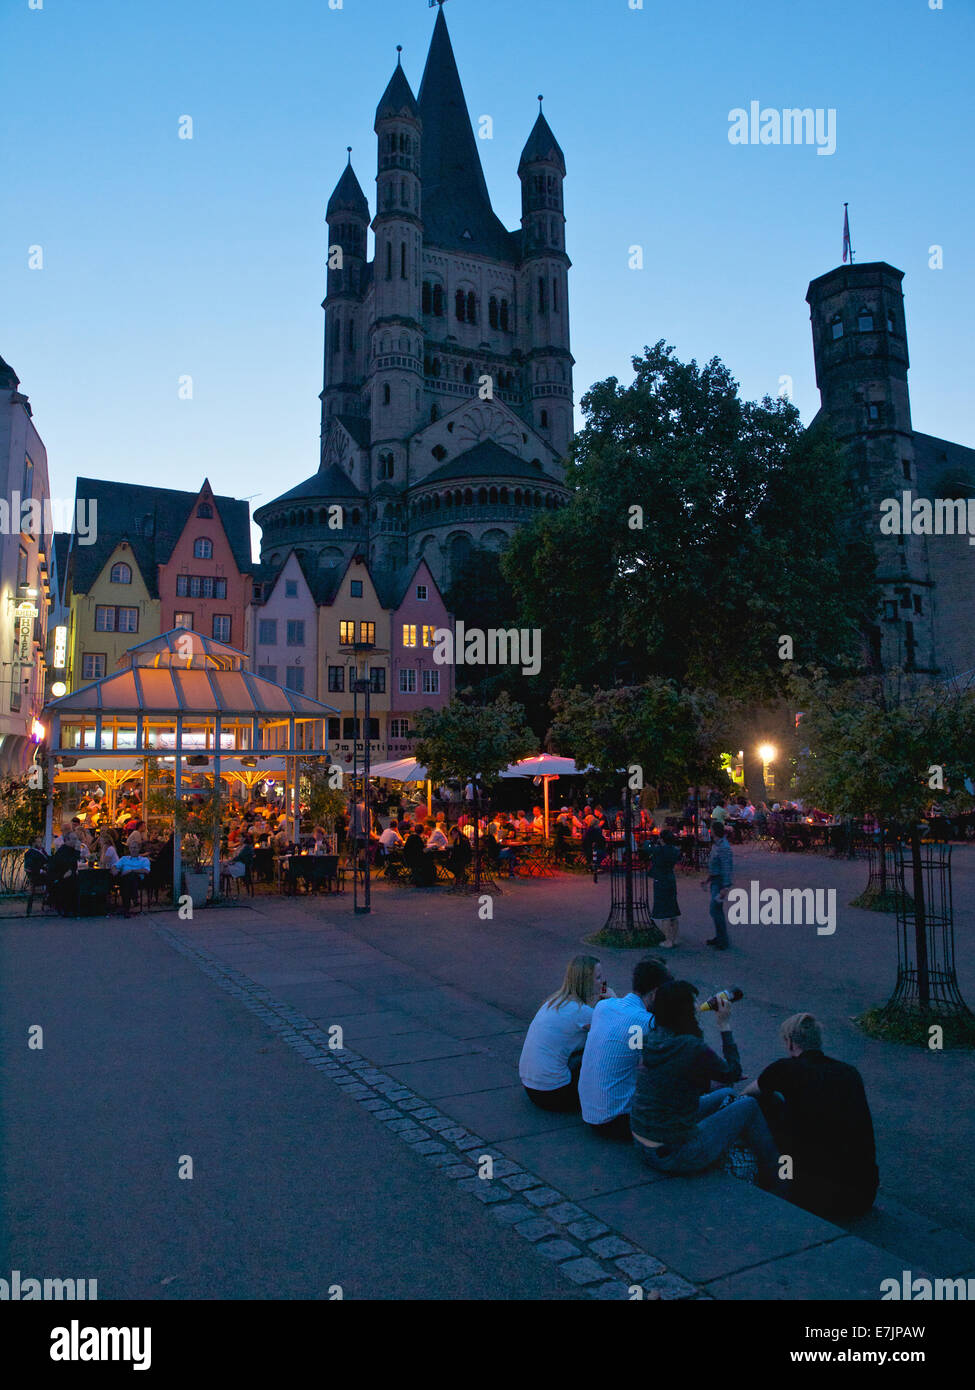 Le centre-ville de Cologne, place du marché de poissons, avec tour, la nuit avec les jeunes de boire, Allemagne Banque D'Images